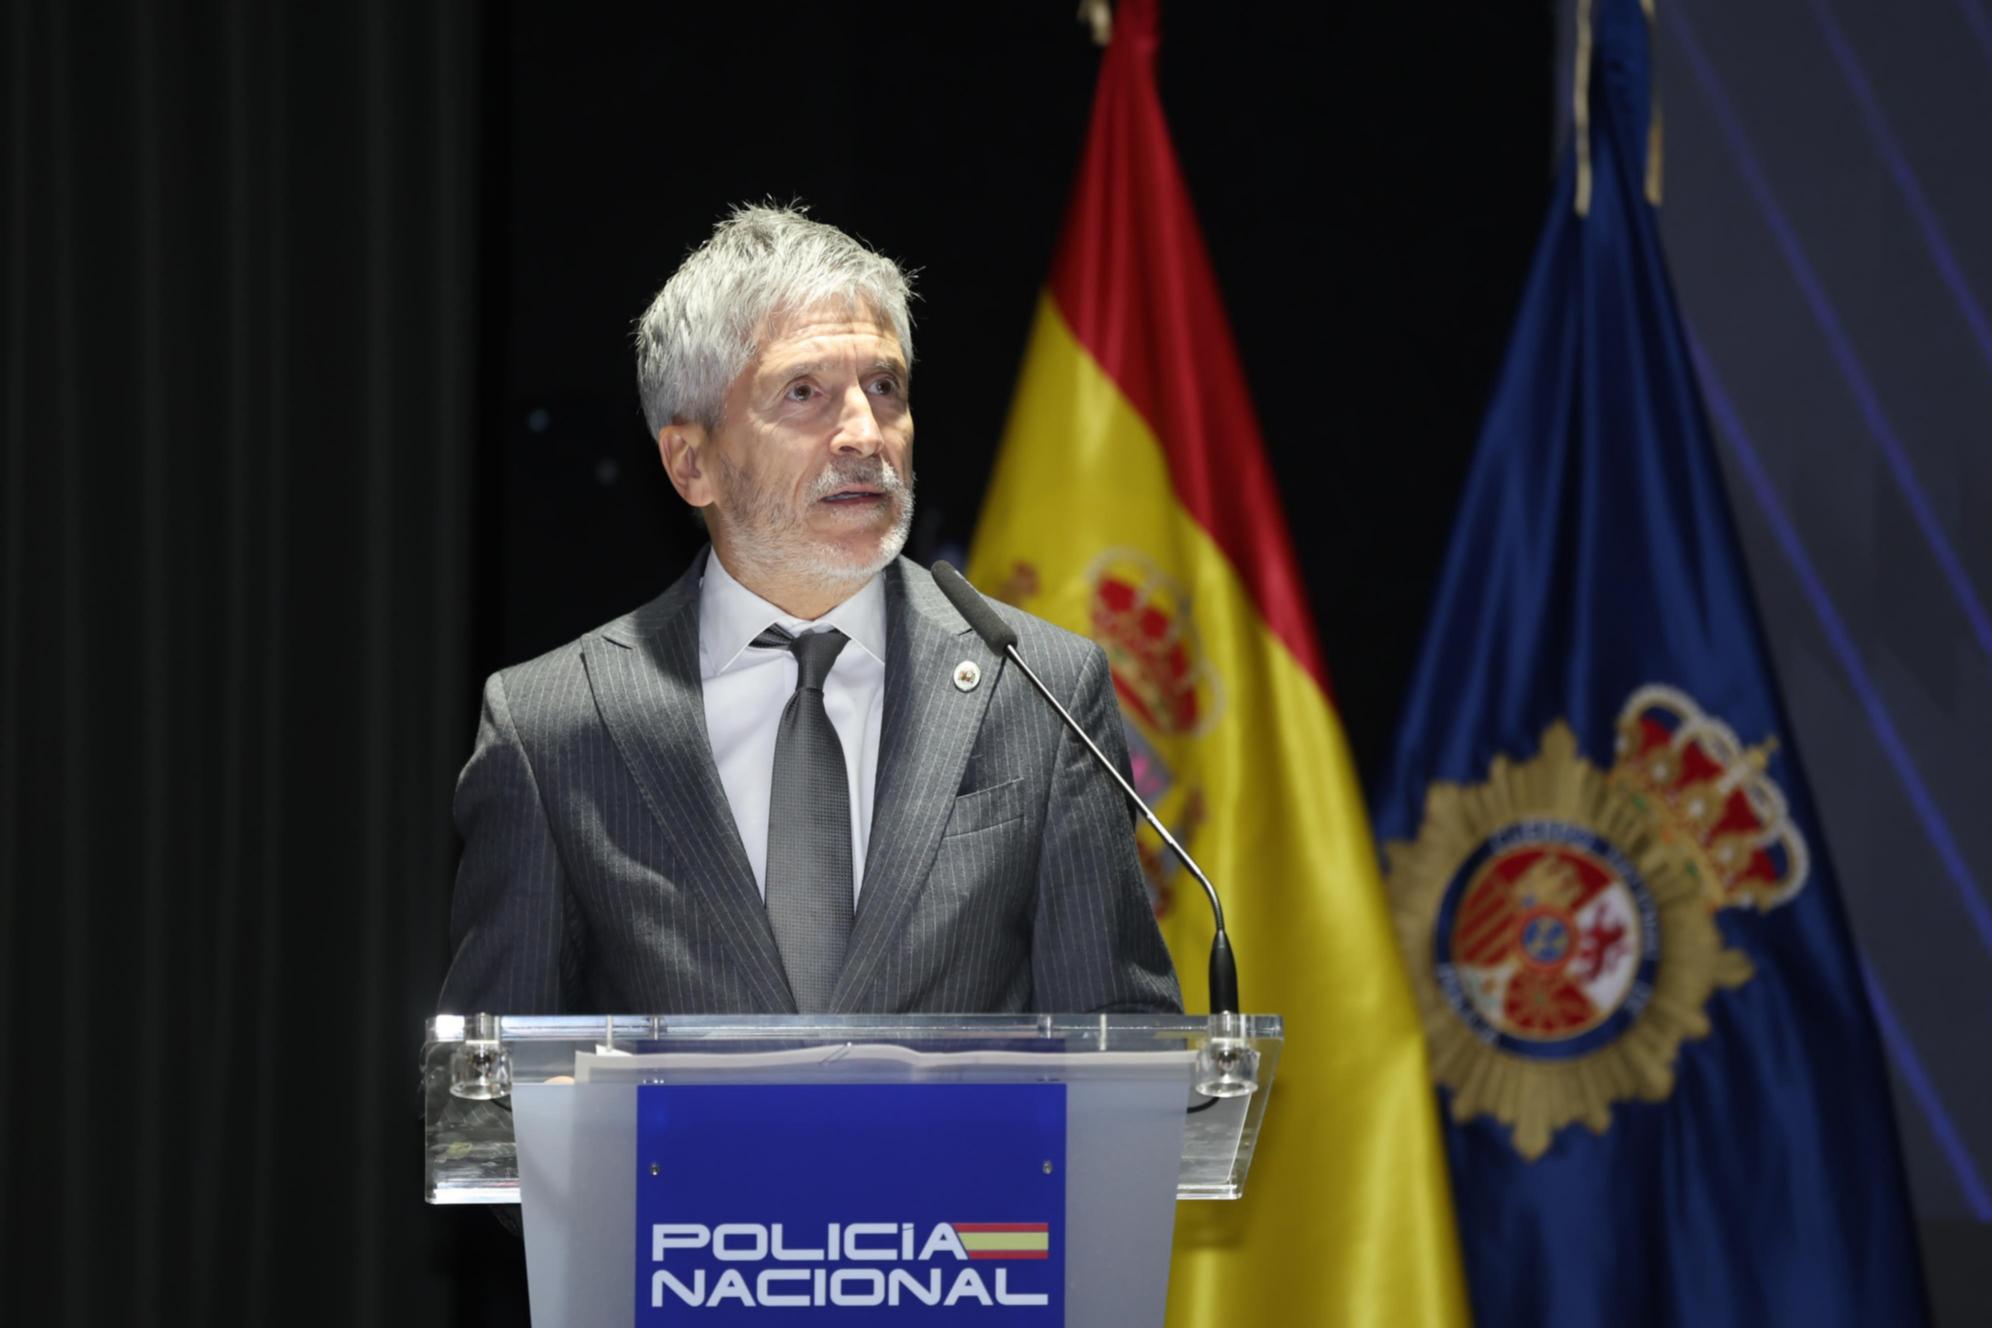 Grande-Marlaska inaugura en Ávila el nuevo curso académico del Centro Universitario de la Policía Nacional